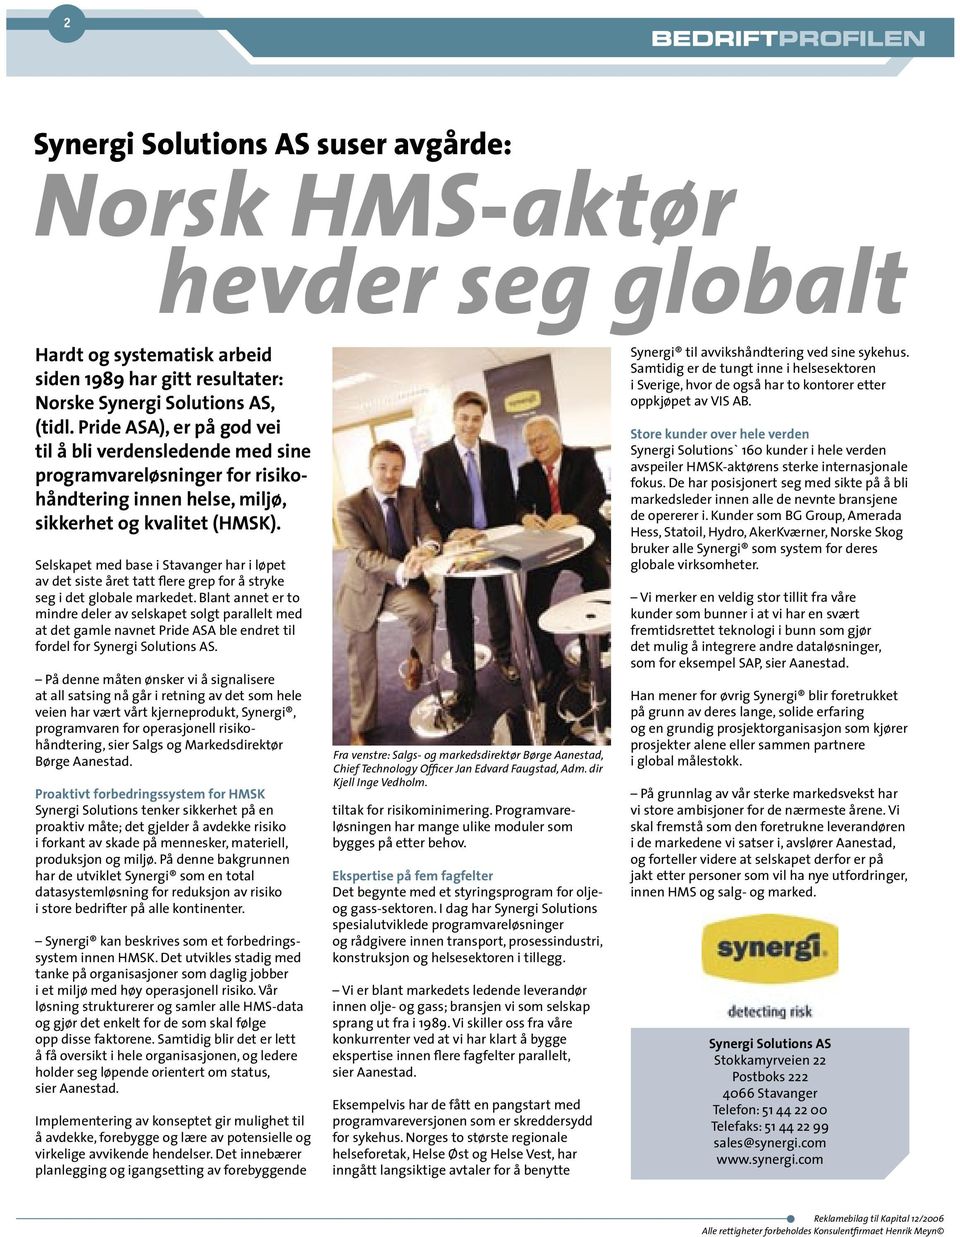 Selskapet med base i Stavanger har i løpet av det siste året tatt flere grep for å stryke seg i det globale markedet.